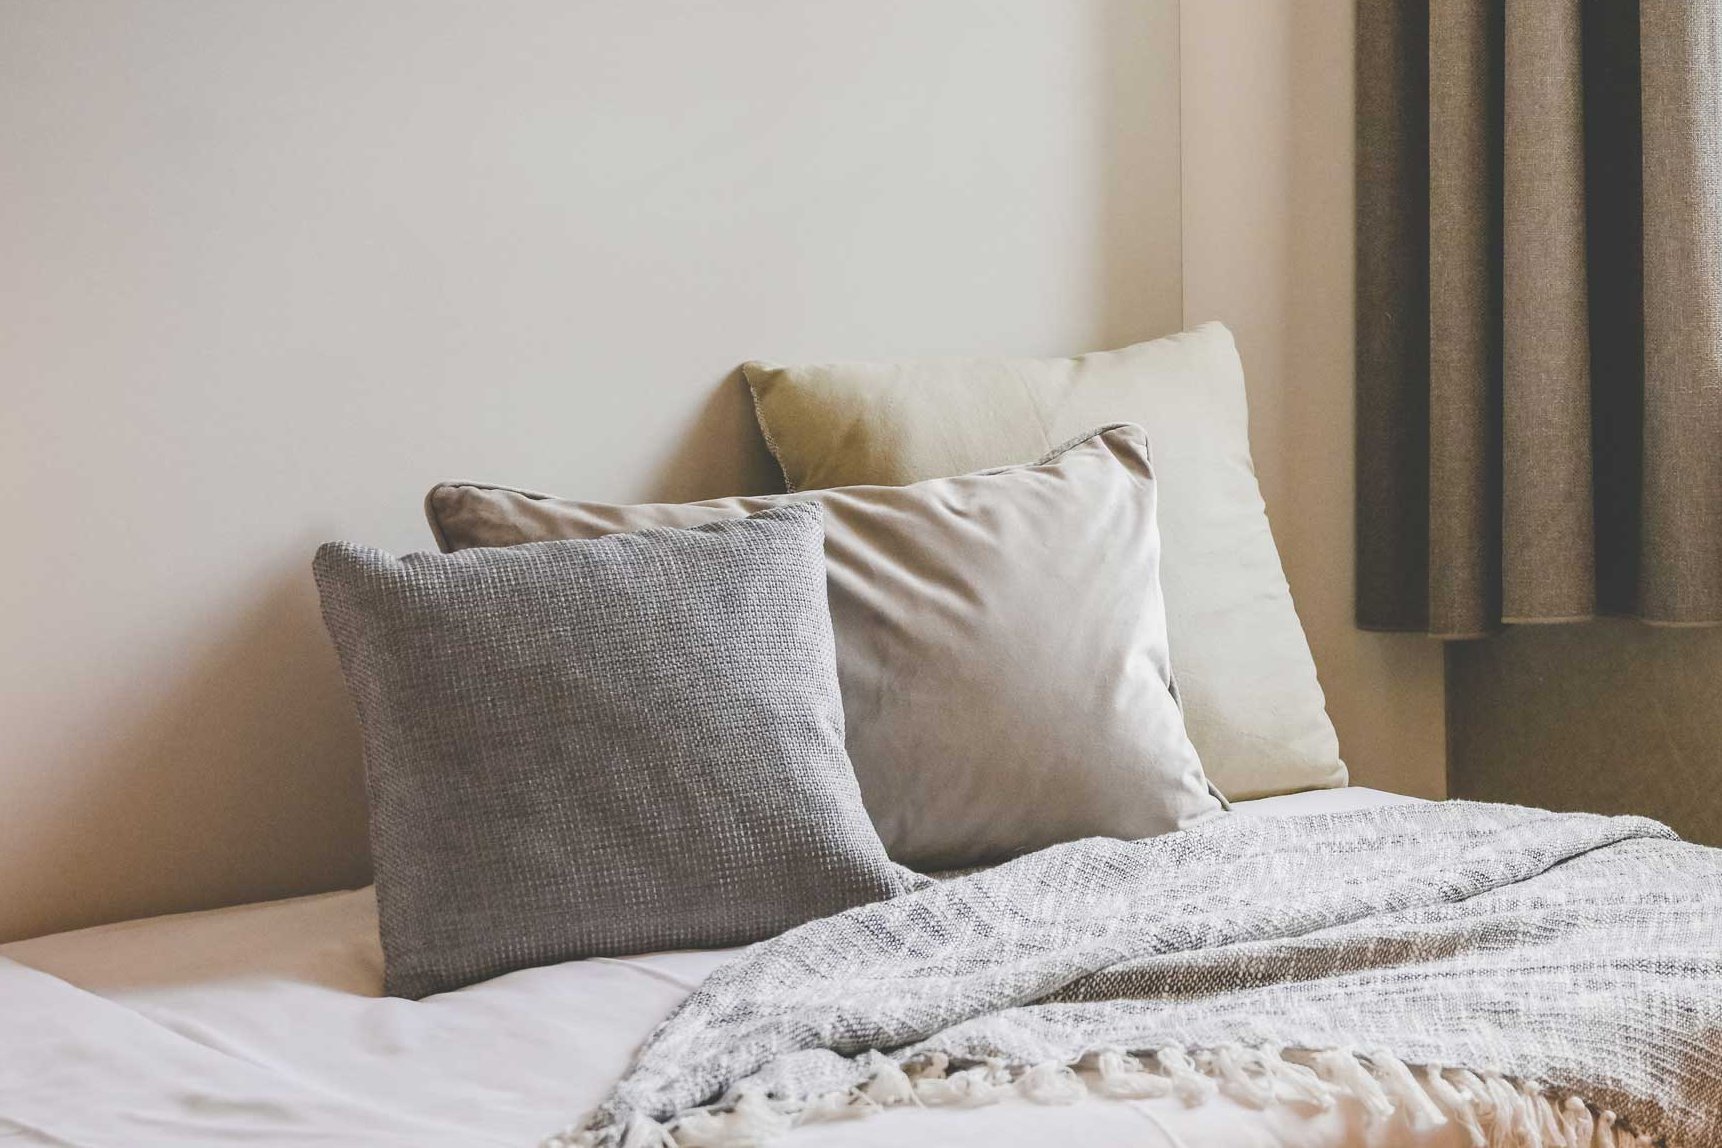 Ein Bett mit Kissen in Erdtönen steht in einem wohnlichen, lichtdurchfluteten Raum neben einem Fenster mit Vorhängen